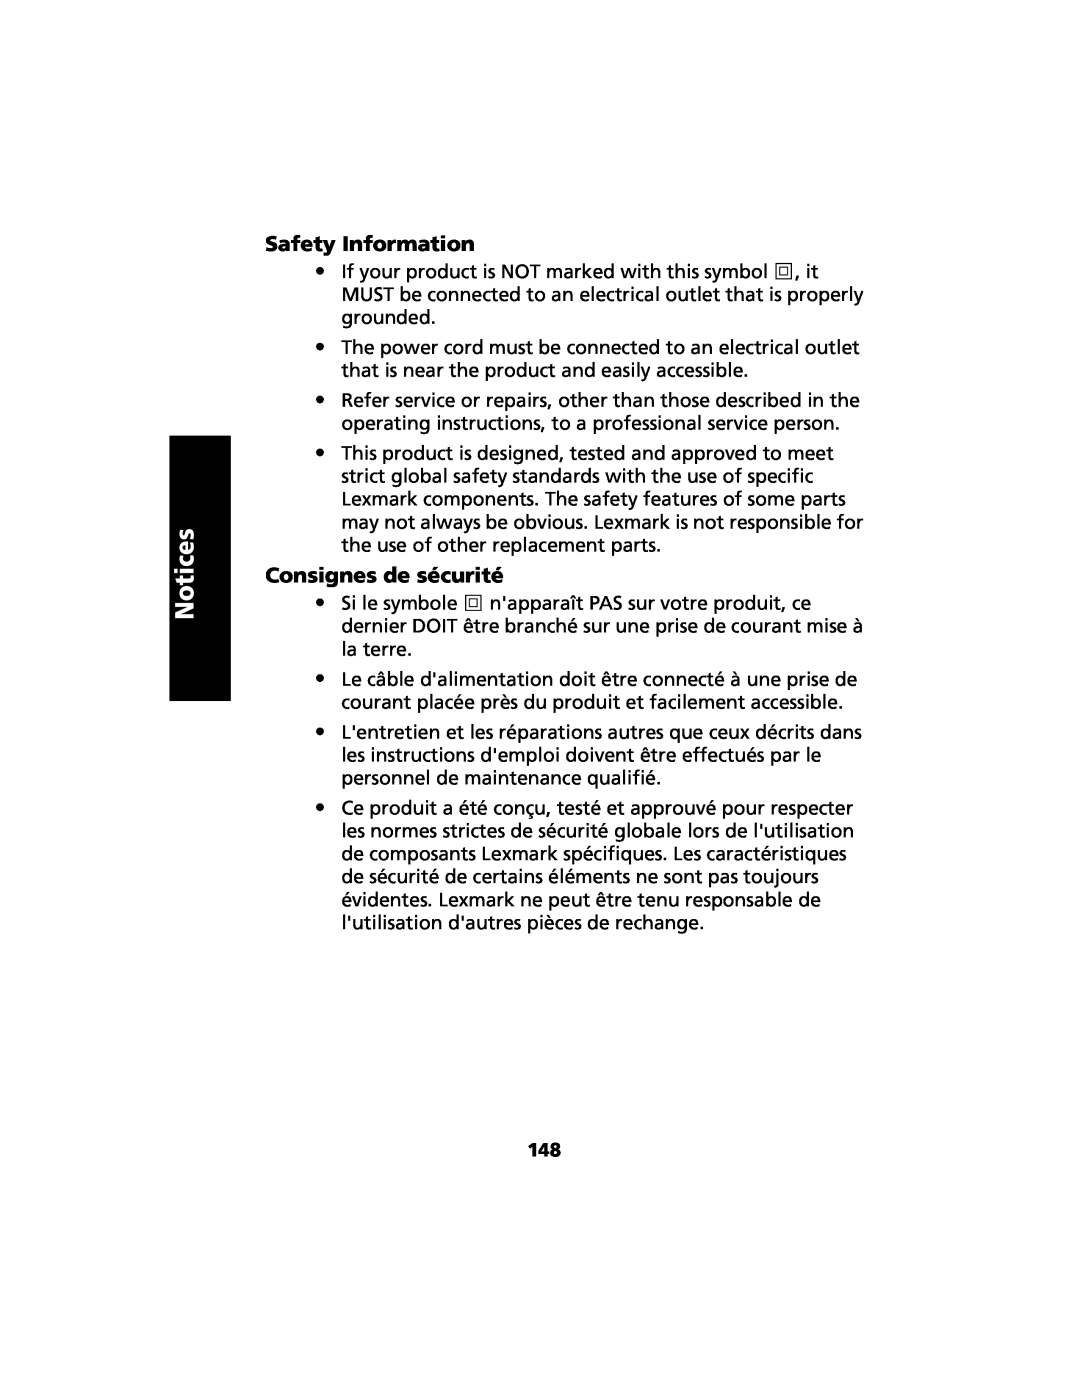 Lexmark 2480 manual Safety Information, Consignes de sécurité, Notices 